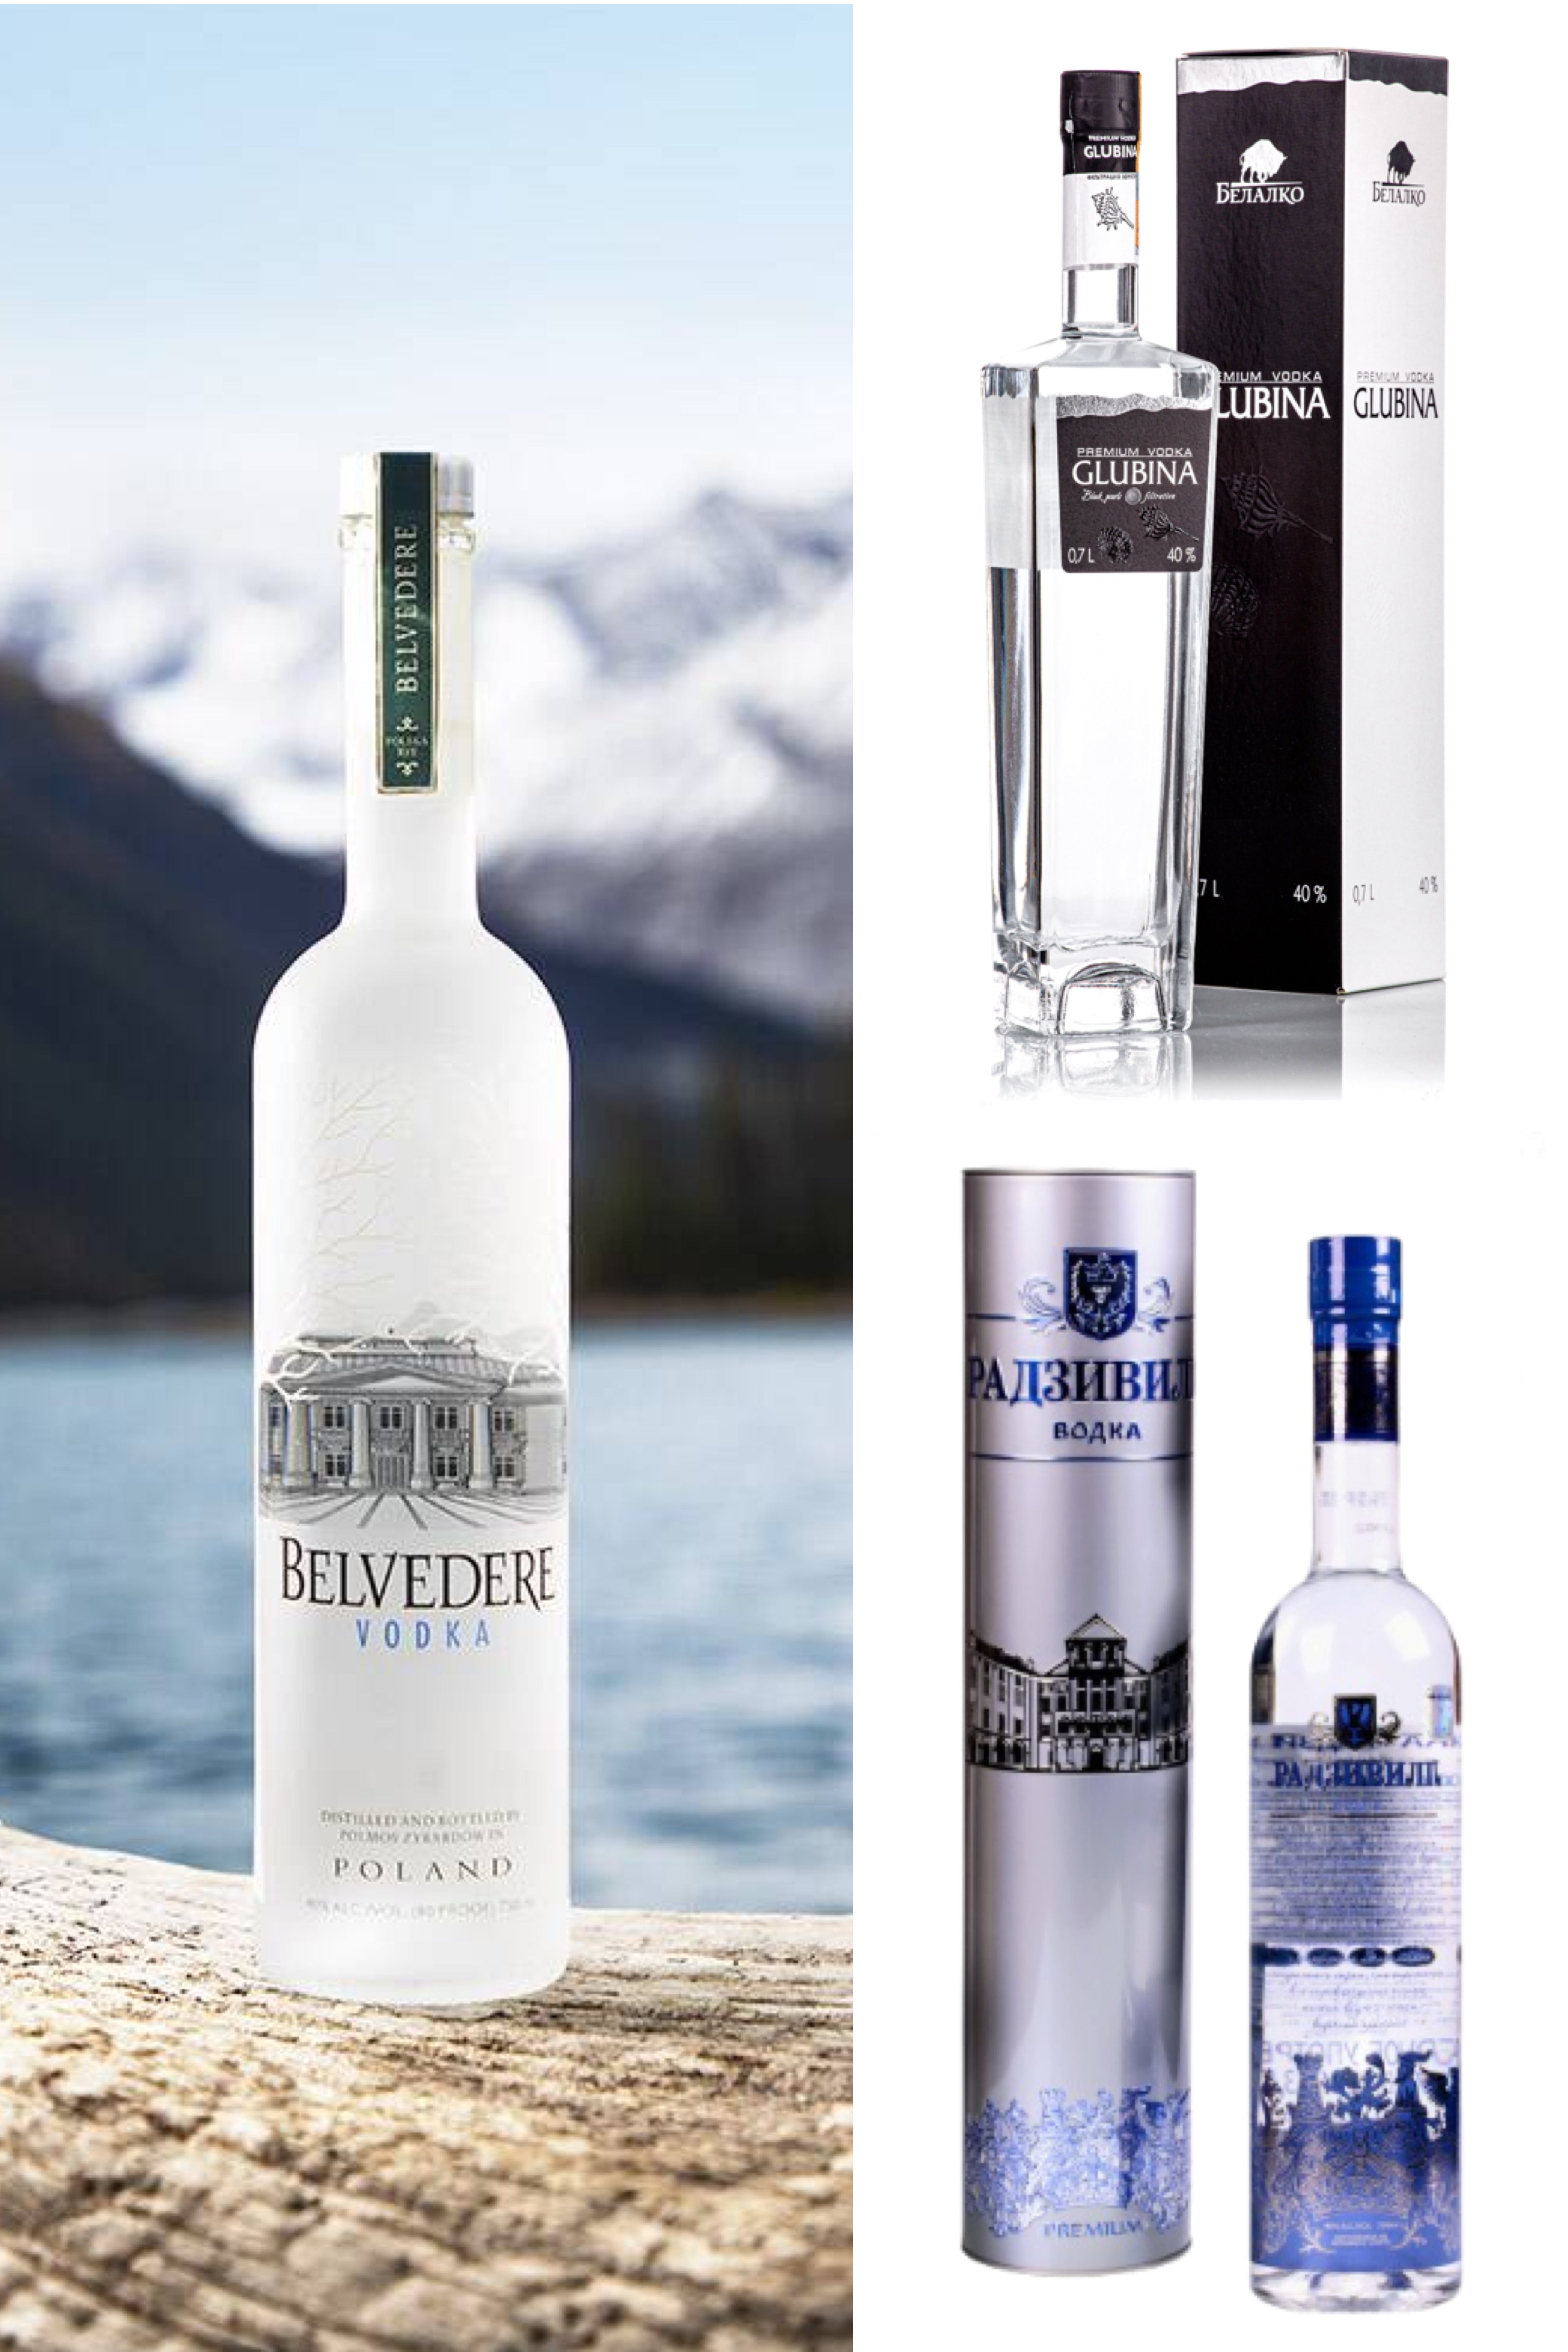 Premium Vodka Tasting - Belvedere, Glubina, Radzivil